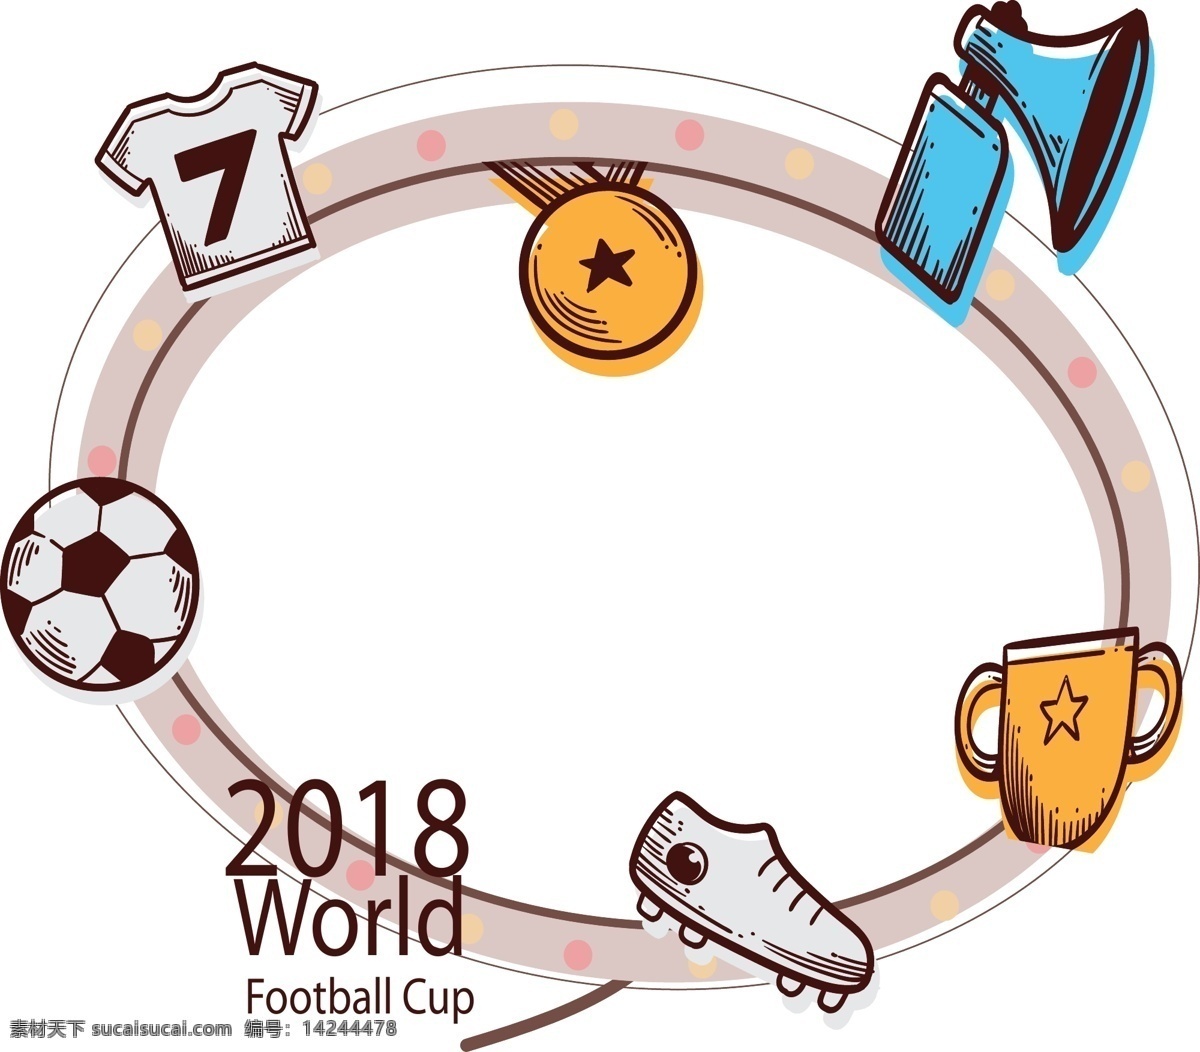 俄罗斯 世界杯 边框 2018 足球 比赛 用品 云朵边框 足球鞋 守门员手套 定时器 清新边框 世界杯边框